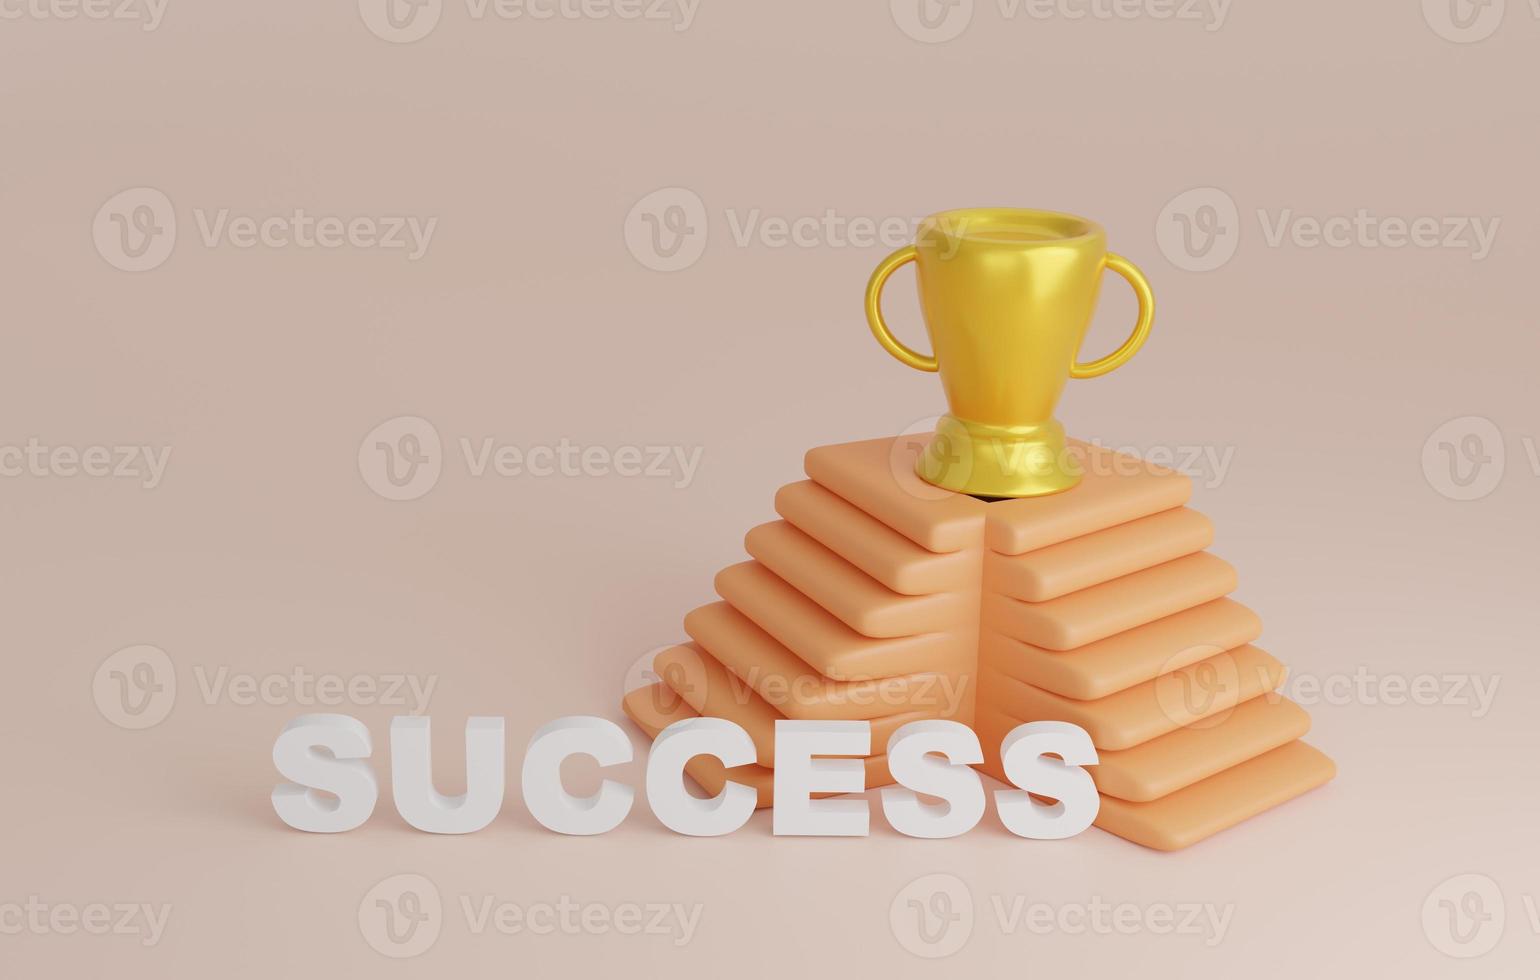 success concept business goal and achievement illustration 3d render photo